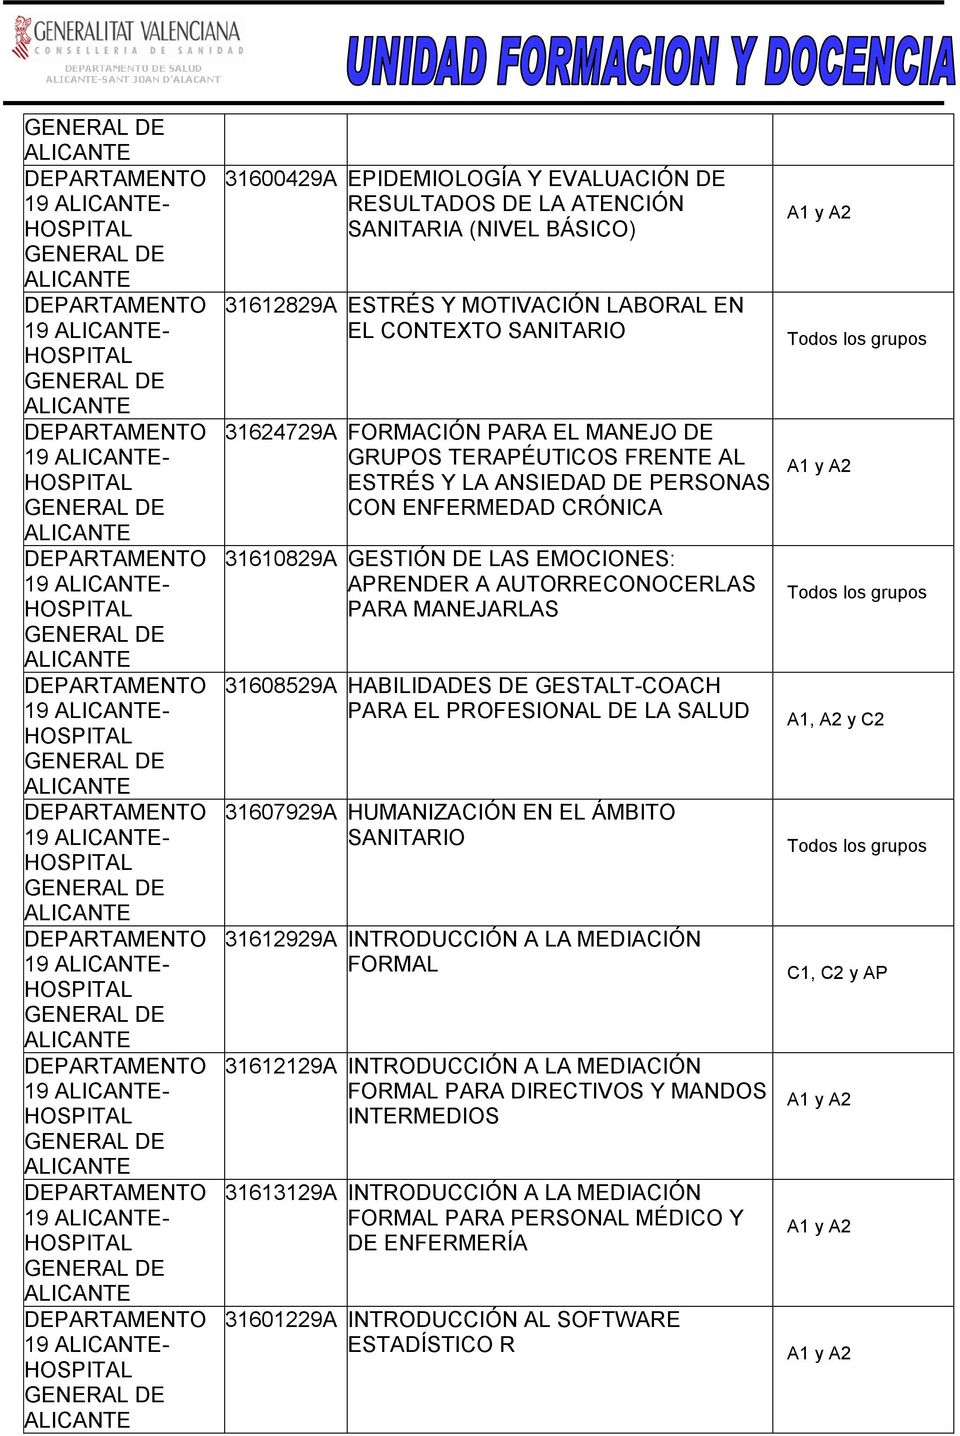 MANEJARLAS 31608529A HABILIDADES DE GESTALT-COACH PARA EL PROFESIONAL DE LA SALUD 31607929A HUMANIZACIÓN EN EL ÁMBITO SANITARIO 31612929A INTRODUCCIÓN A LA MEDIACIÓN FORMAL 31612129A INTRODUCCIÓN